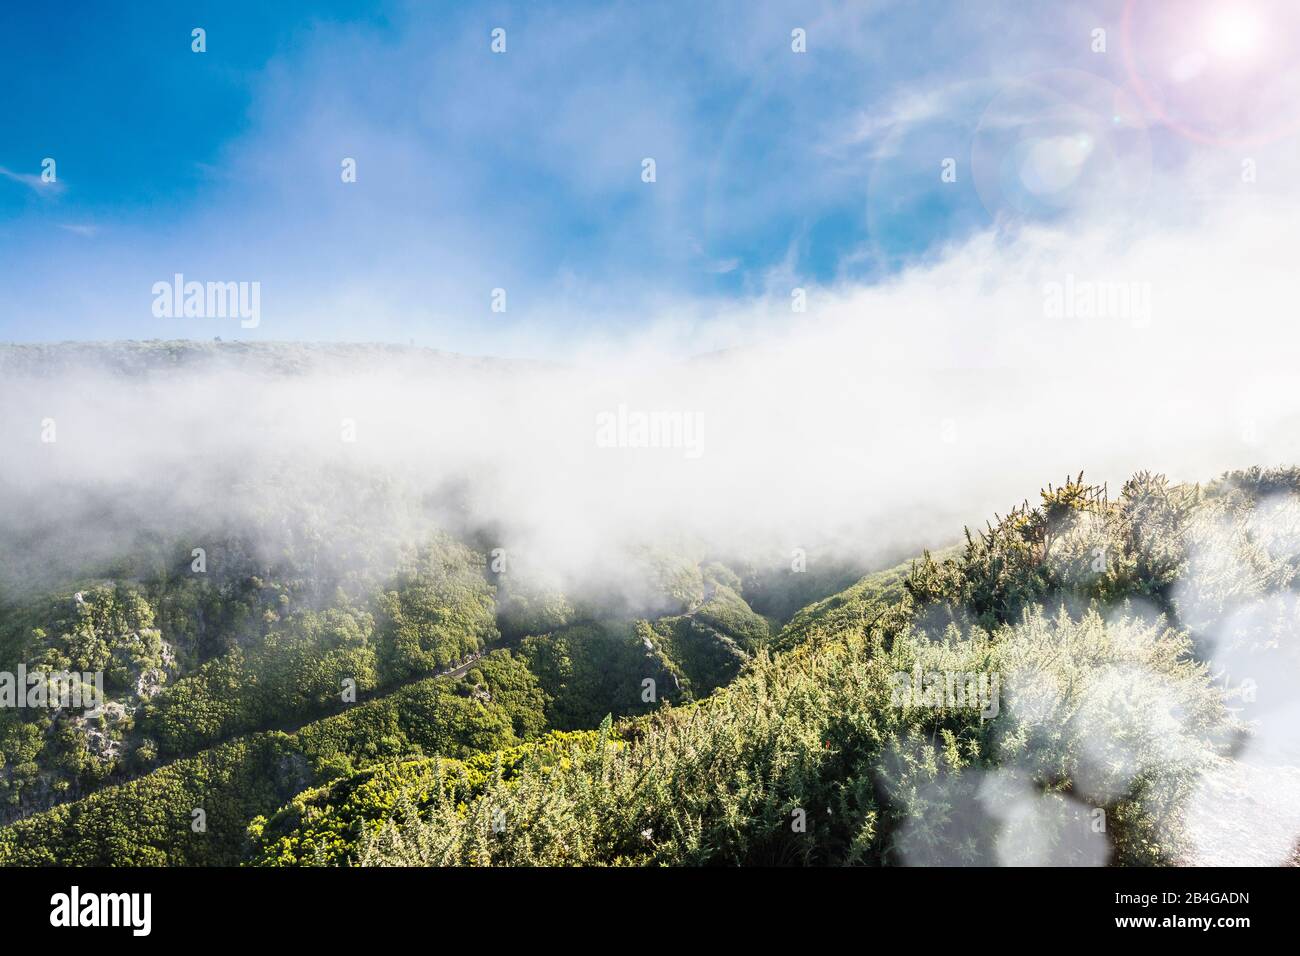 Europe, Portugal, Madeira, Paúl da Serra plateau, Rabacal, mountain slopes in fog Stock Photo